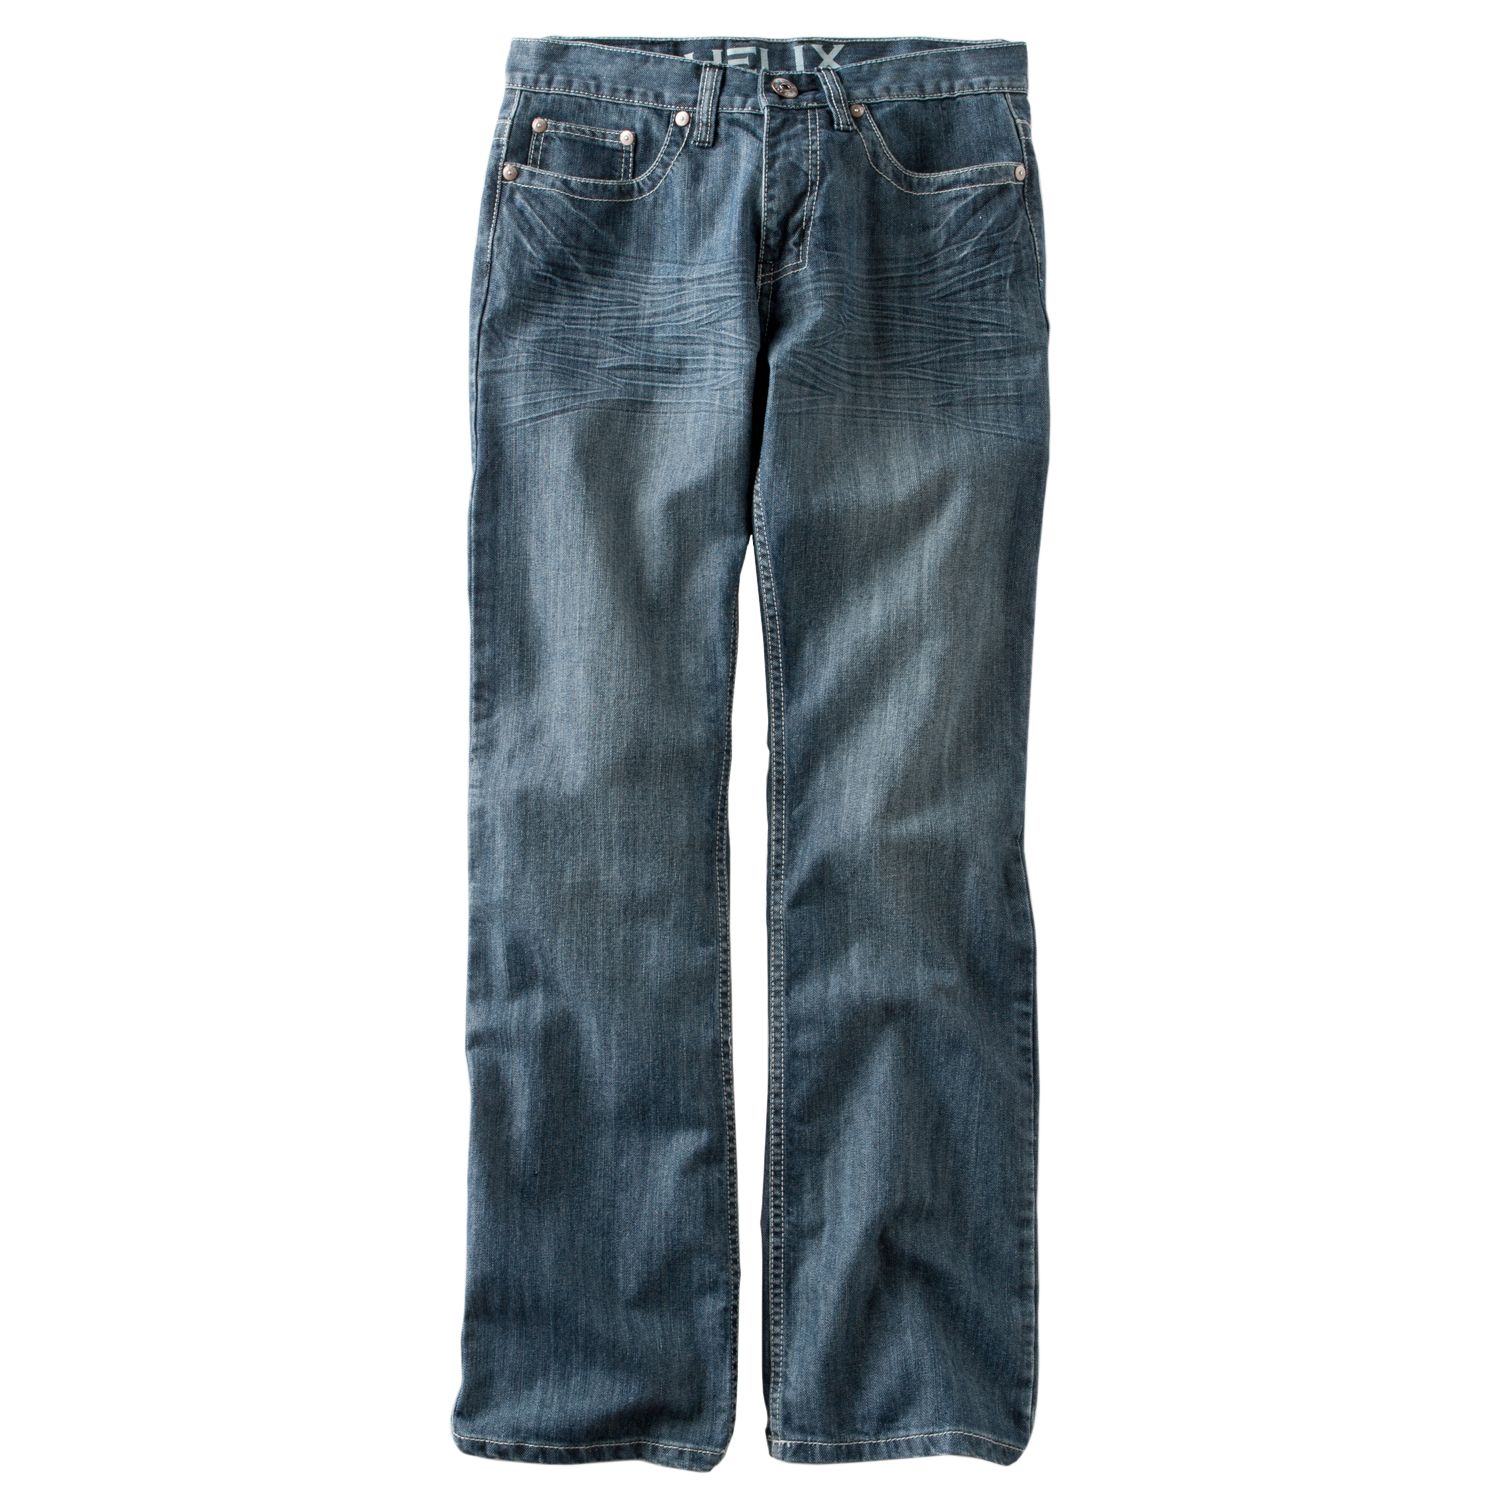 kohl's denim jeans